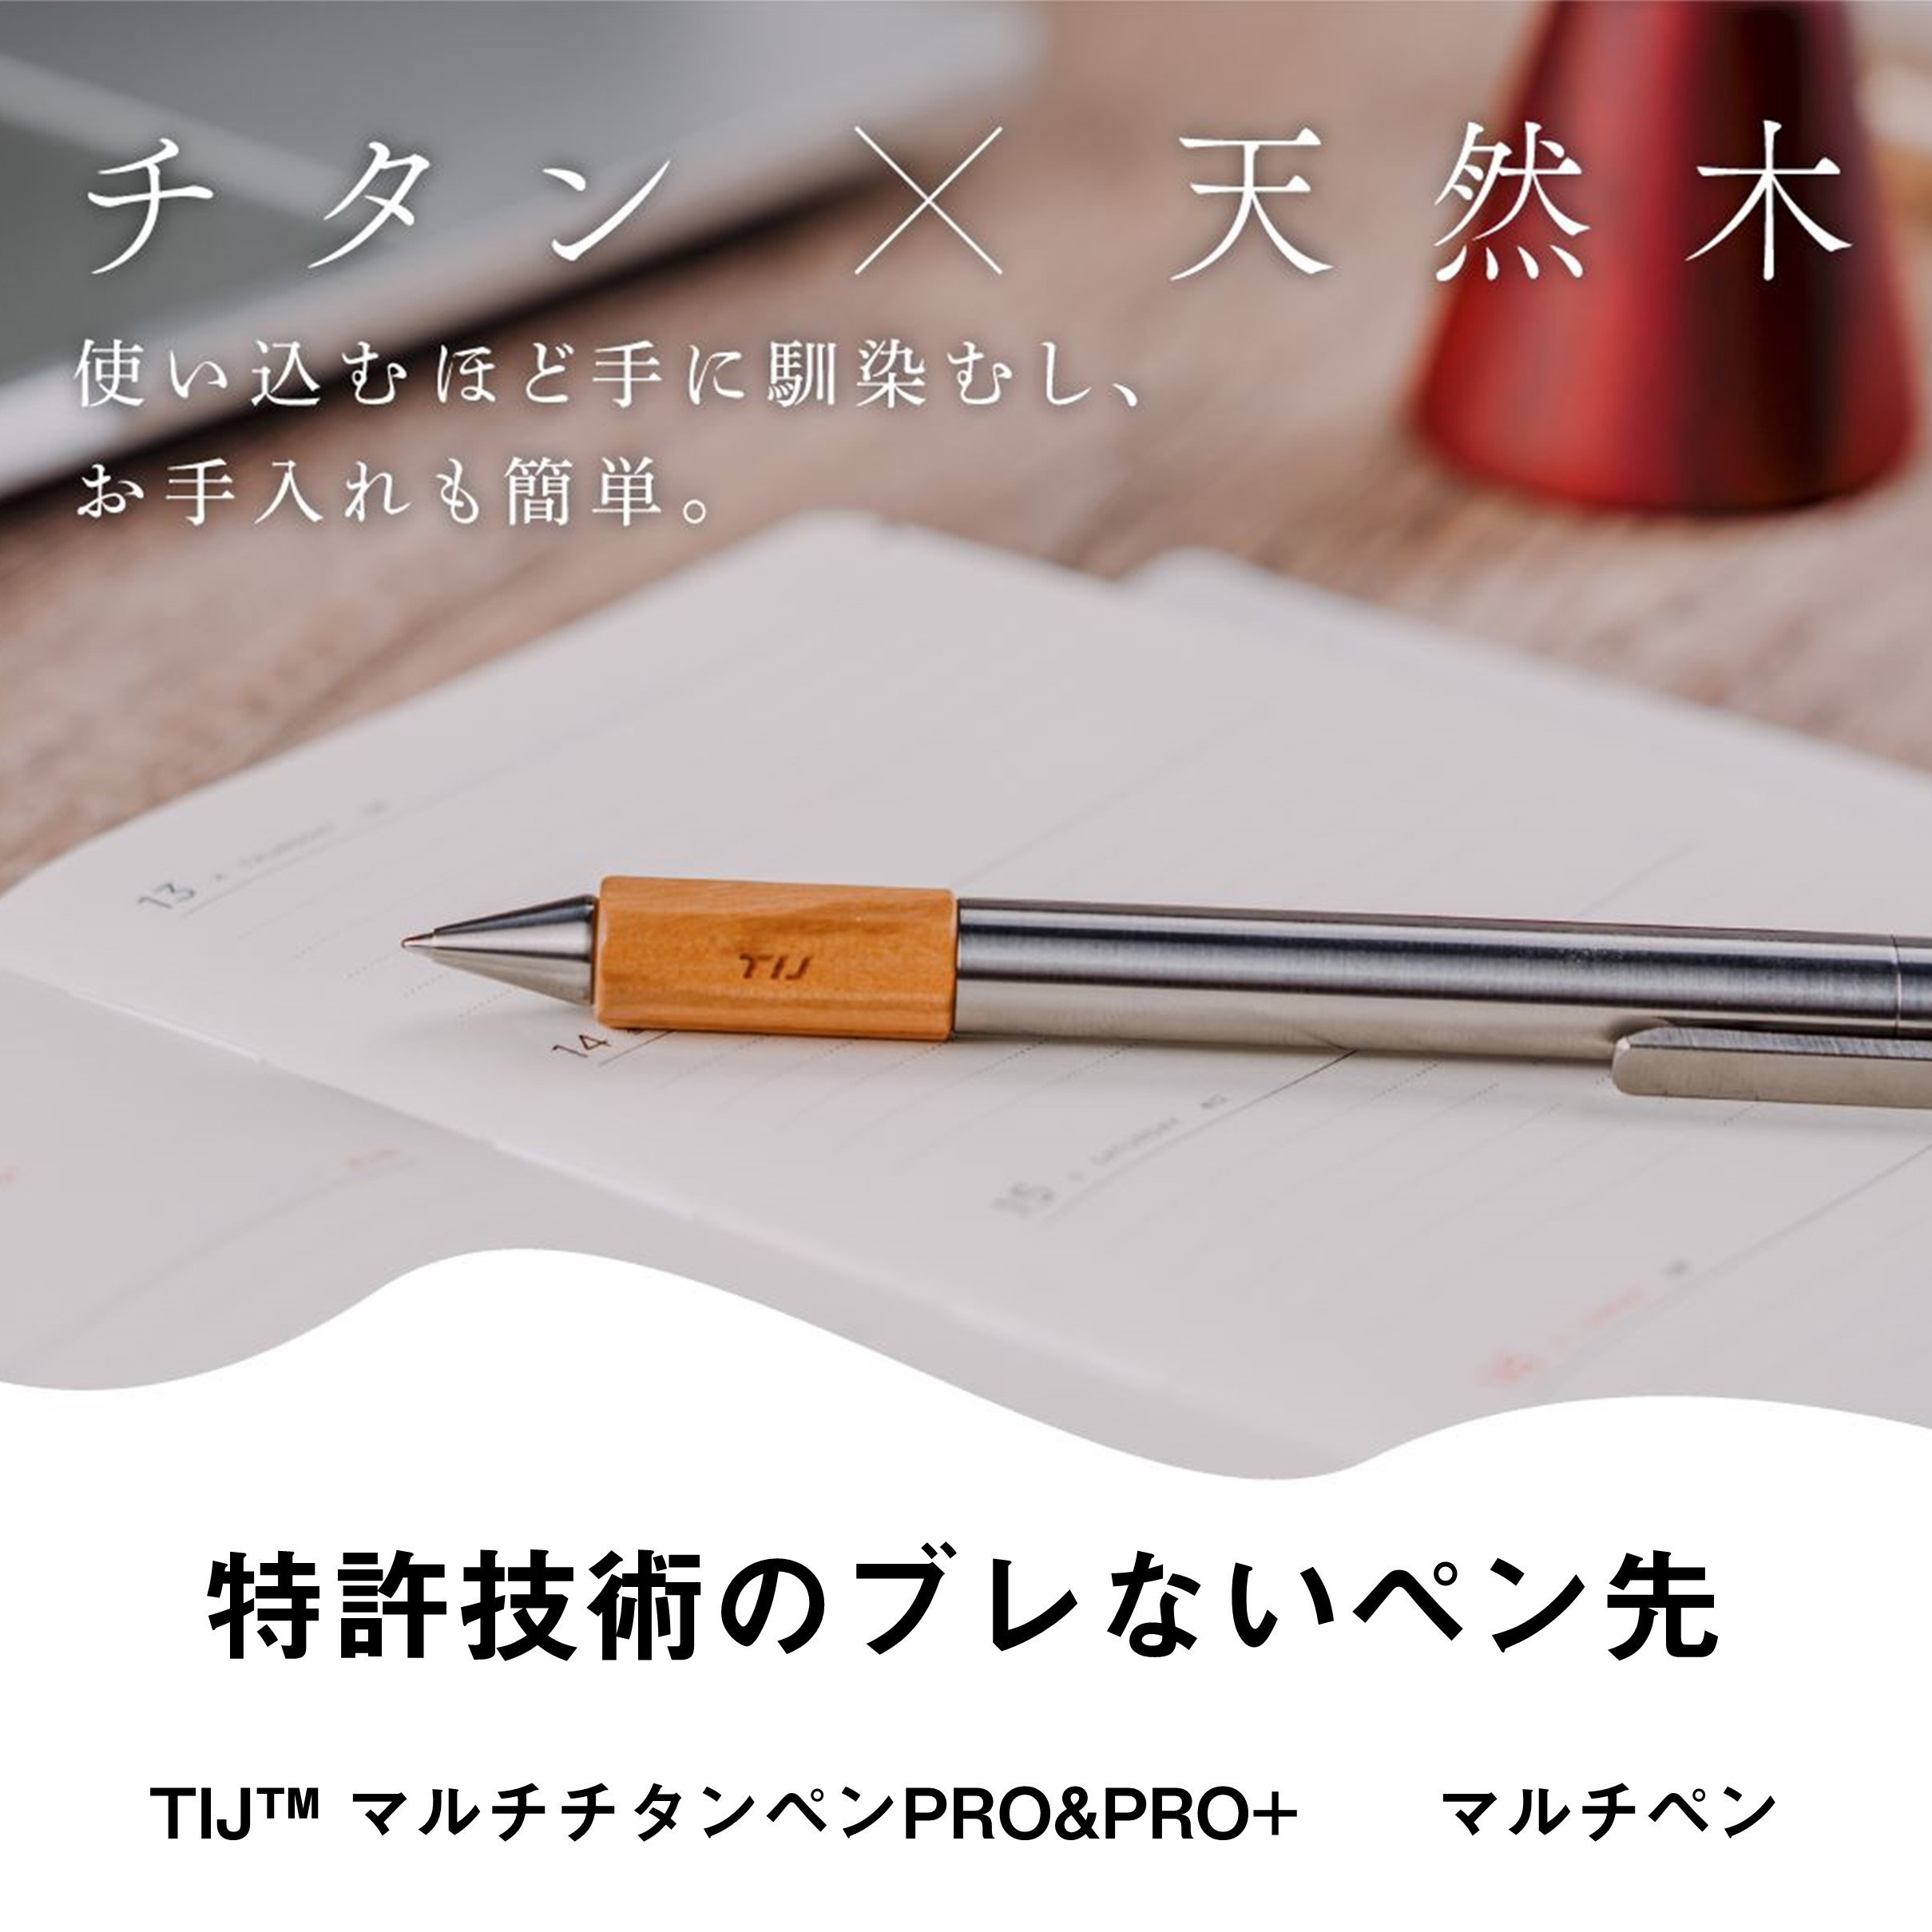 TIJ™ マルチチタンペンPRO&PRO+ / ペン先がブレない高級ペン